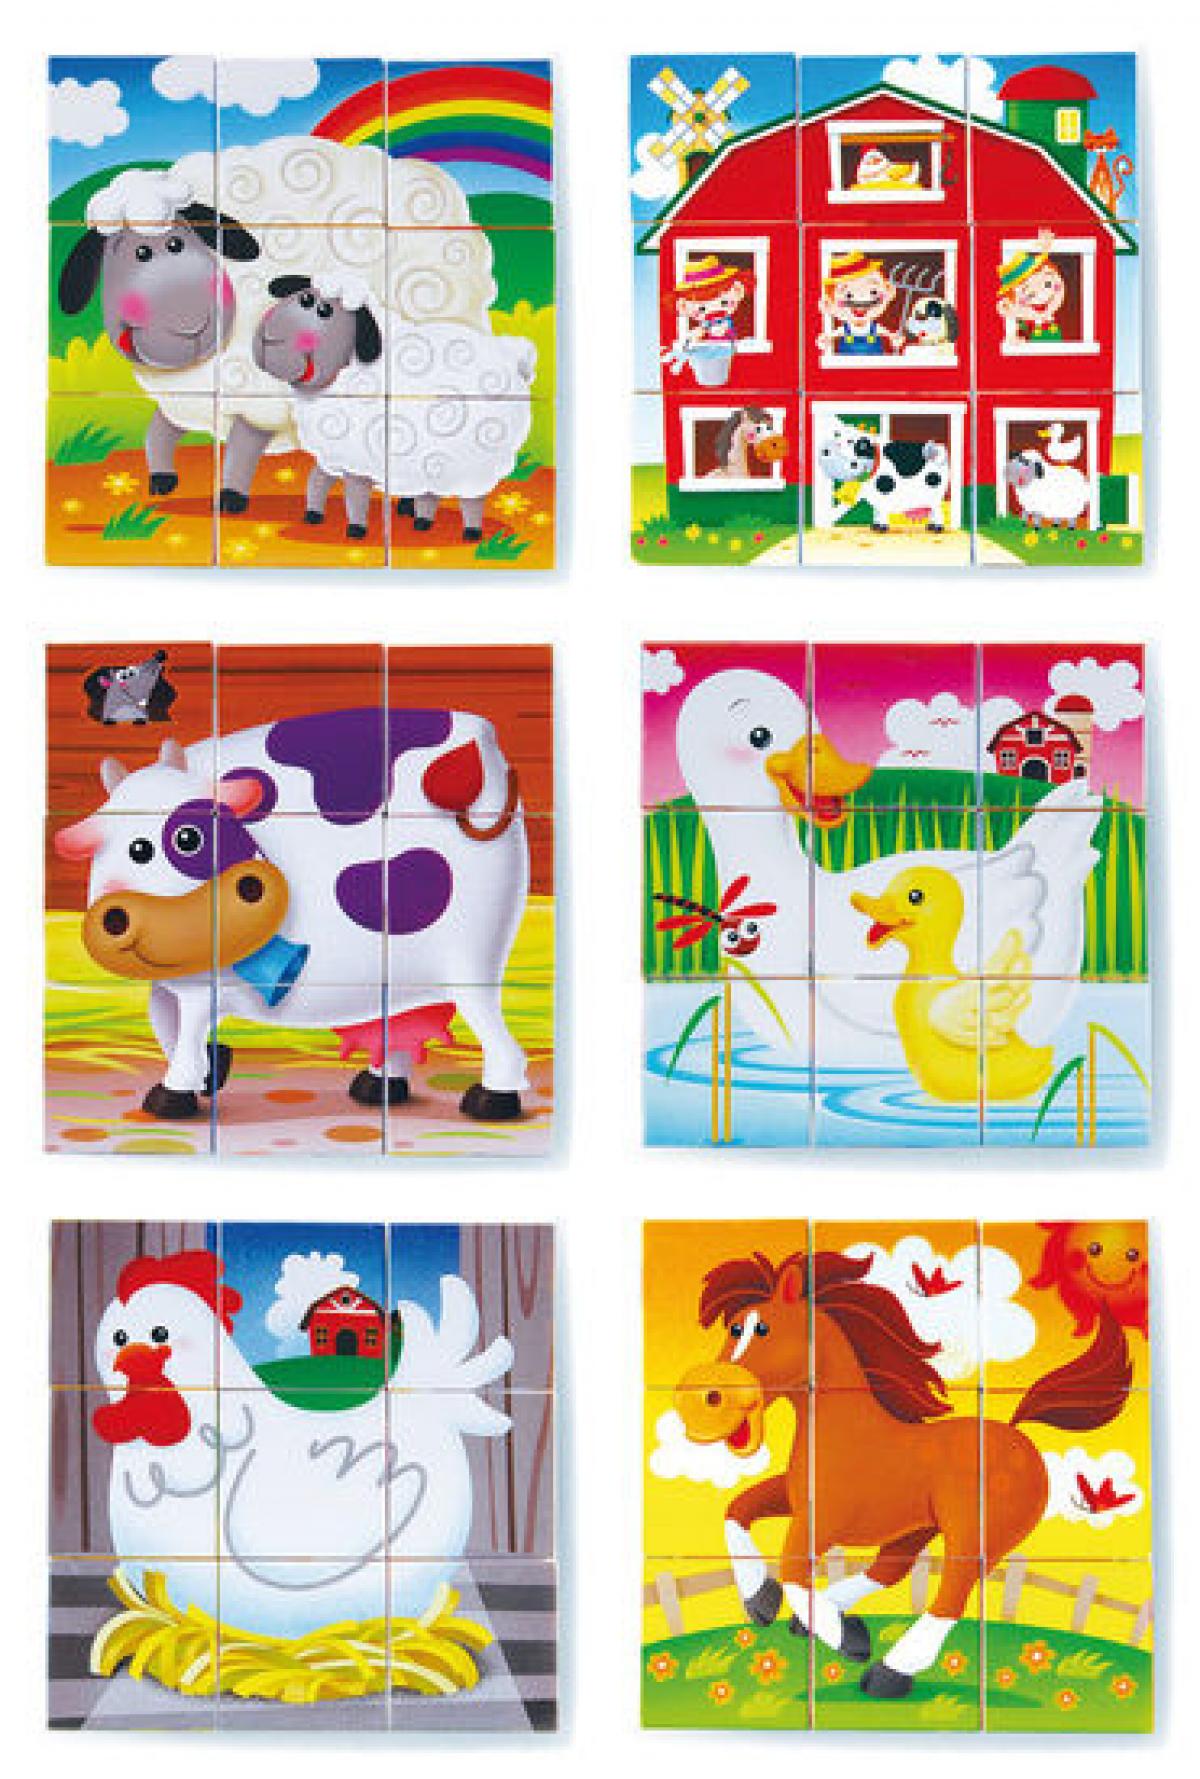 Playgo Bauernhof Würfelpuzzle 6 Puzzle in Einem ab 18 Monate NEU ovp 228203 